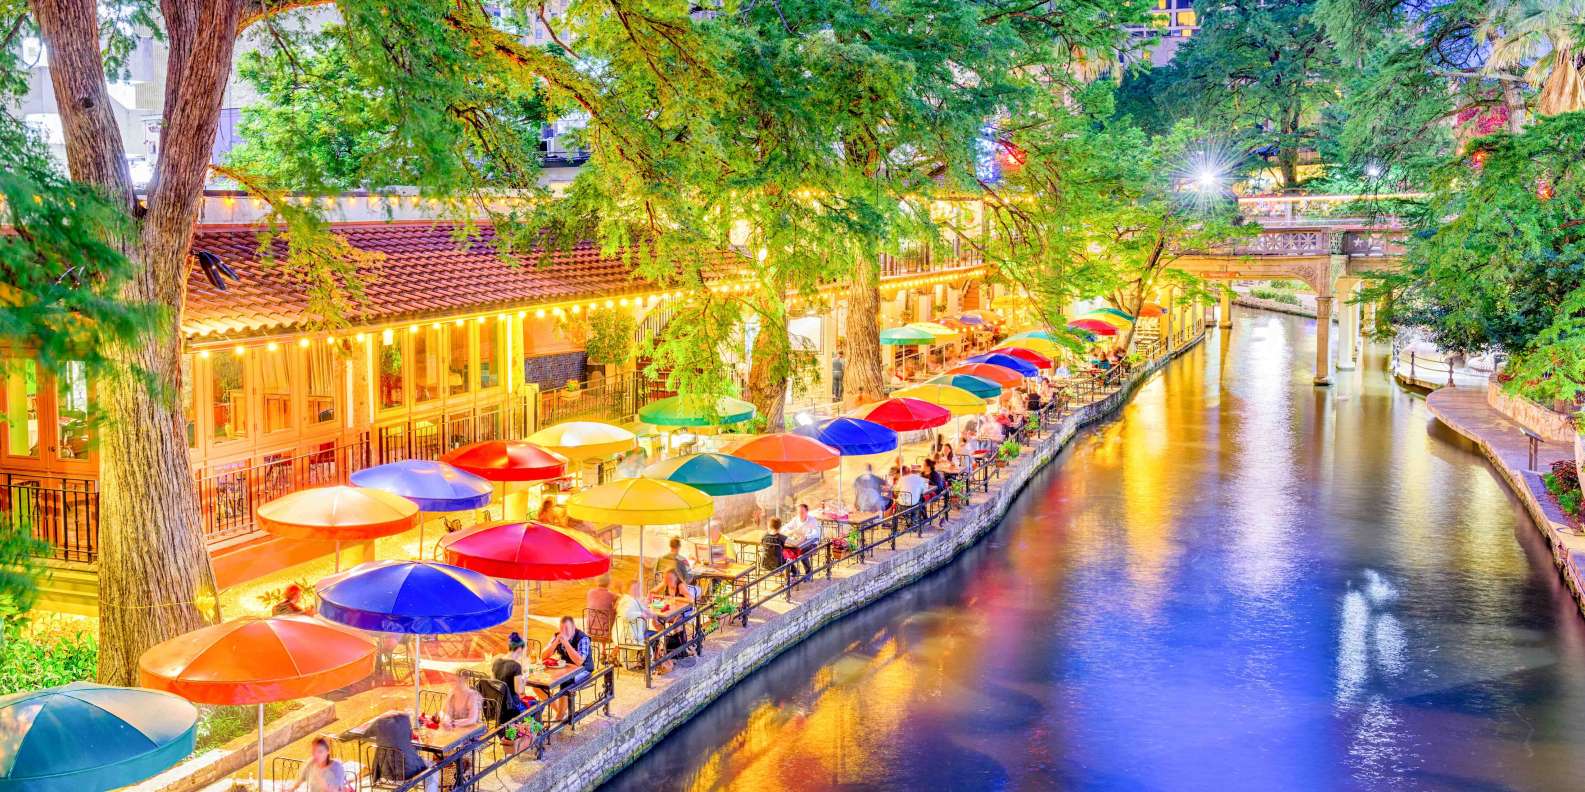 Best San Antonio Riverwalk Restaurants - No Tourist Traps! (2023